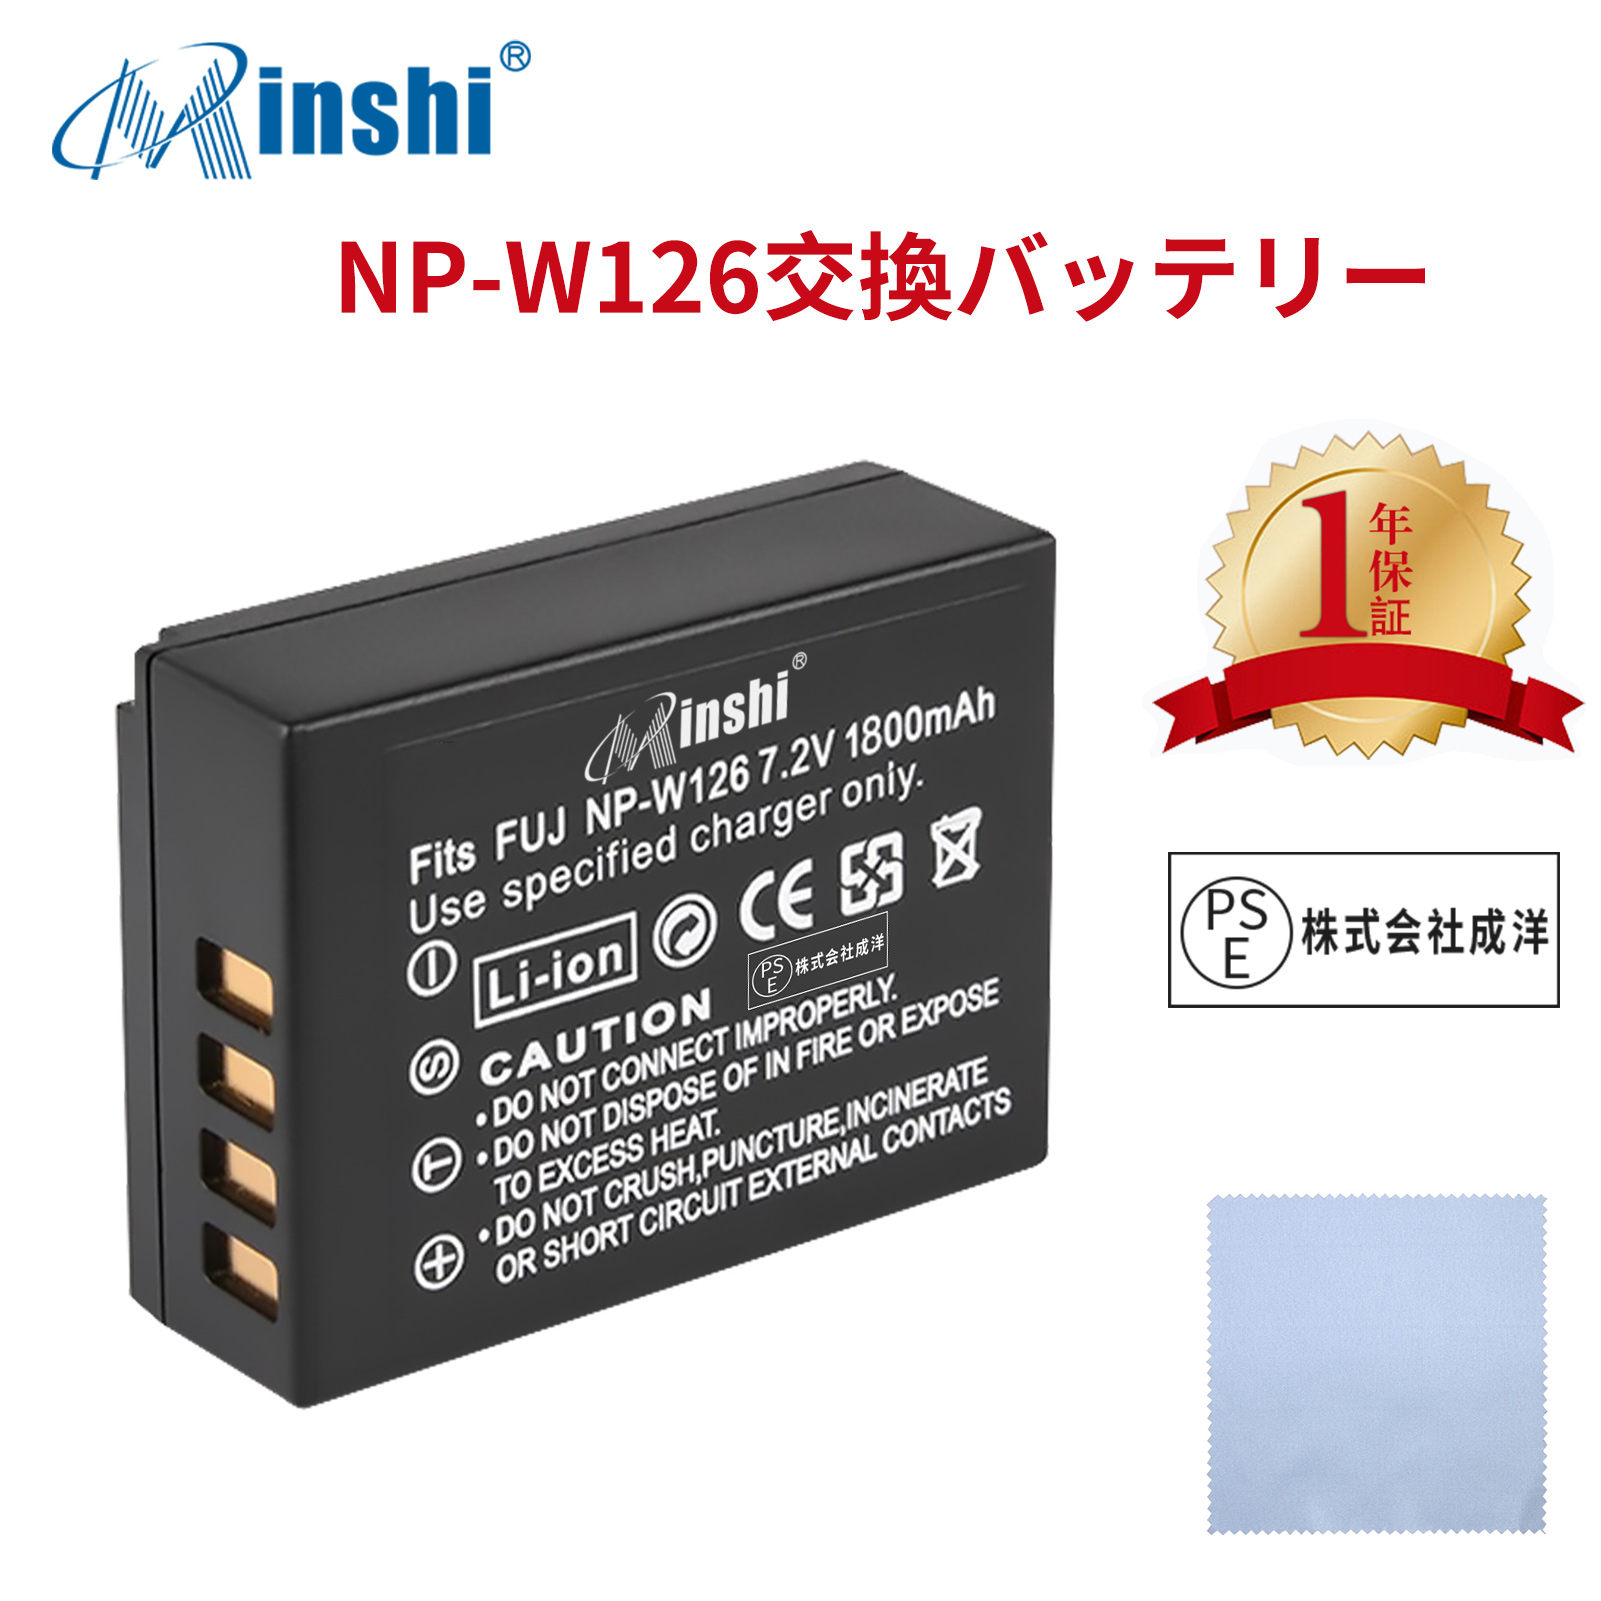 【クロス付き】minshi FUJIFILM X-E1 NP-W126 【1800mAh 7.2V】 NP-W126 NP-W126S高品質 NP-W126S NP-W126互換バッテリー